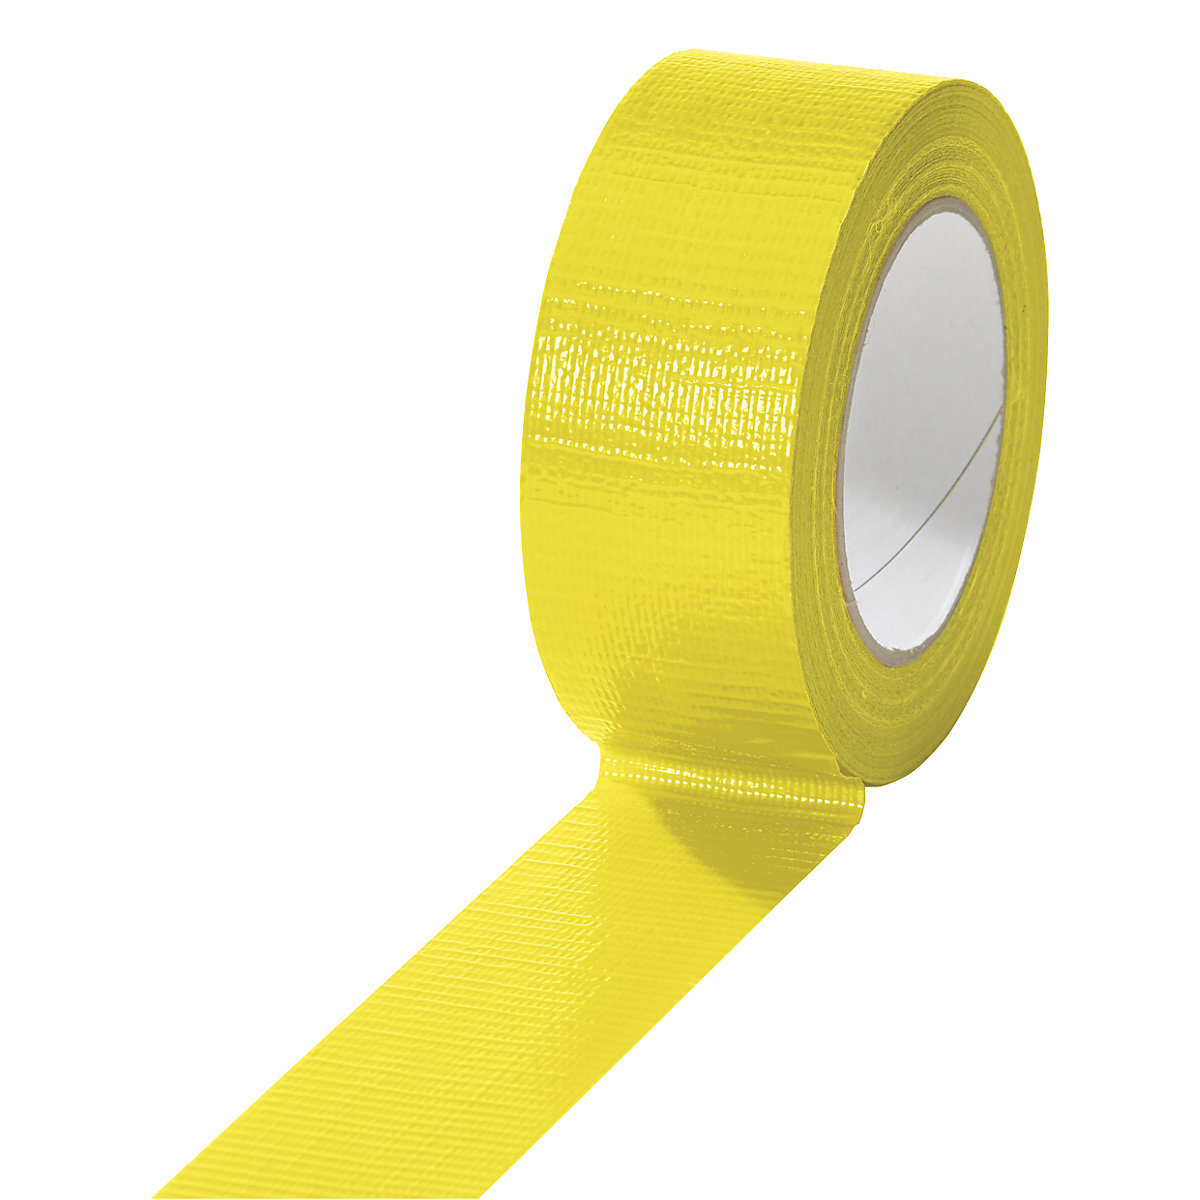 Taśma tkaninowa, w różnych kolorach, opak. 24 rolki, żółta, szer. taśmy 38 mm-2